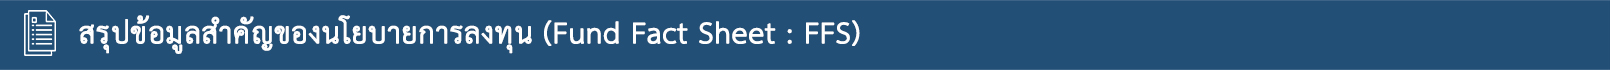 banner FFS 1